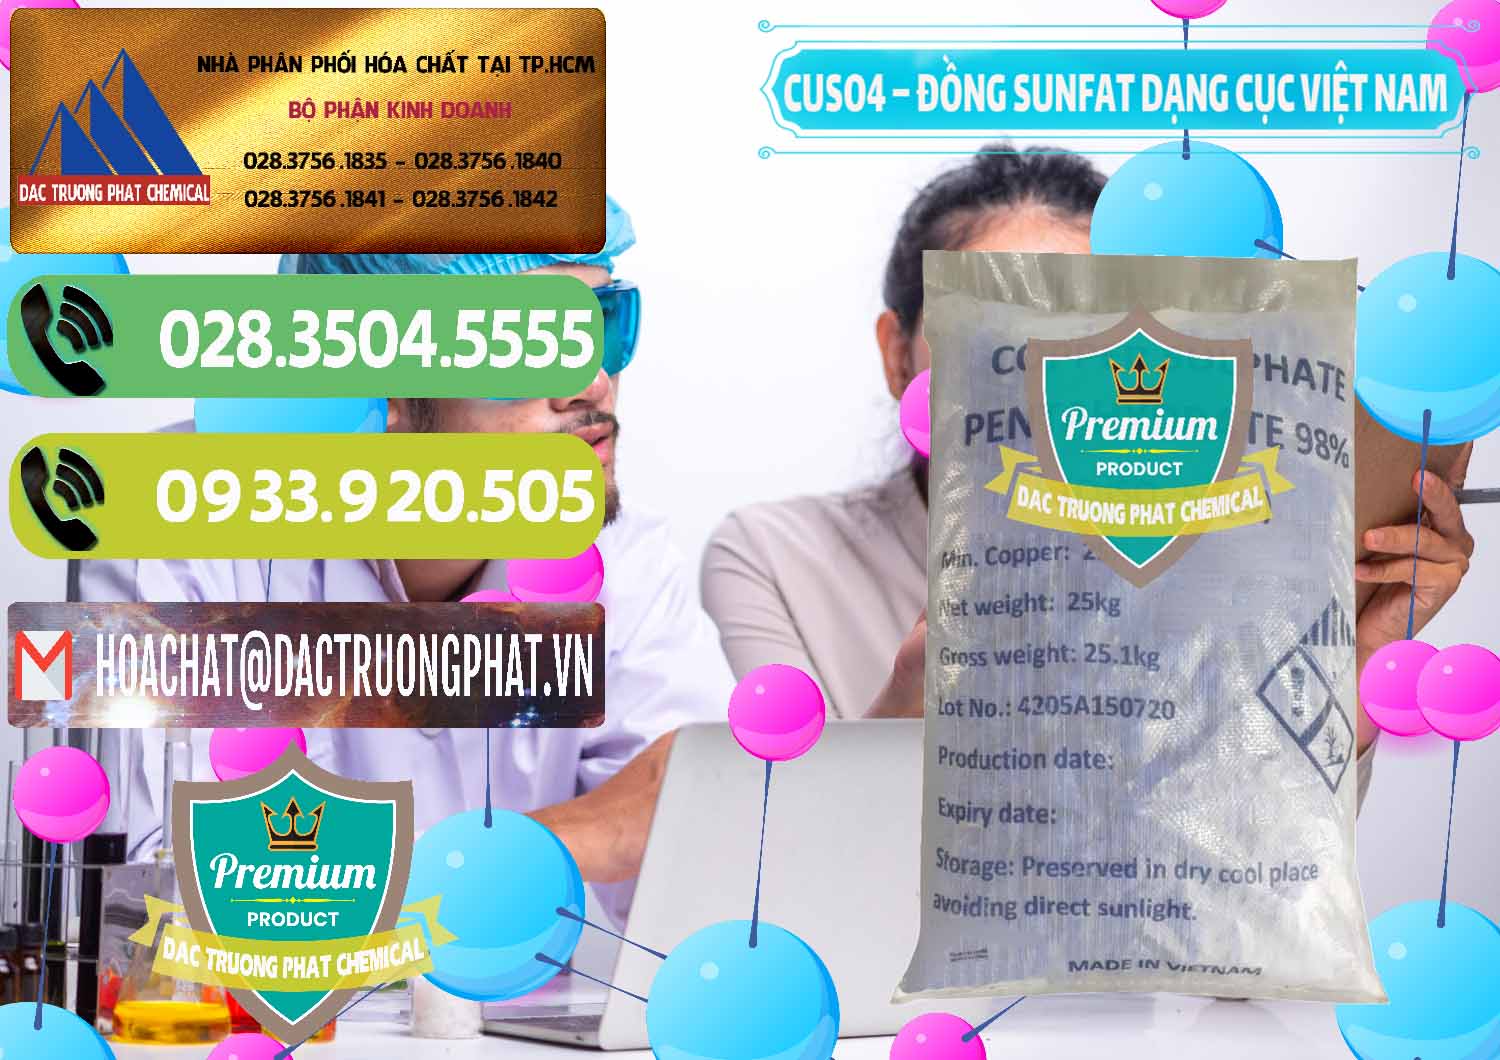 Nhà phân phối - kinh doanh CUSO4 – Đồng Sunfat Dạng Cục Việt Nam - 0303 - Chuyên cung cấp - phân phối hóa chất tại TP.HCM - hoachatmientay.vn